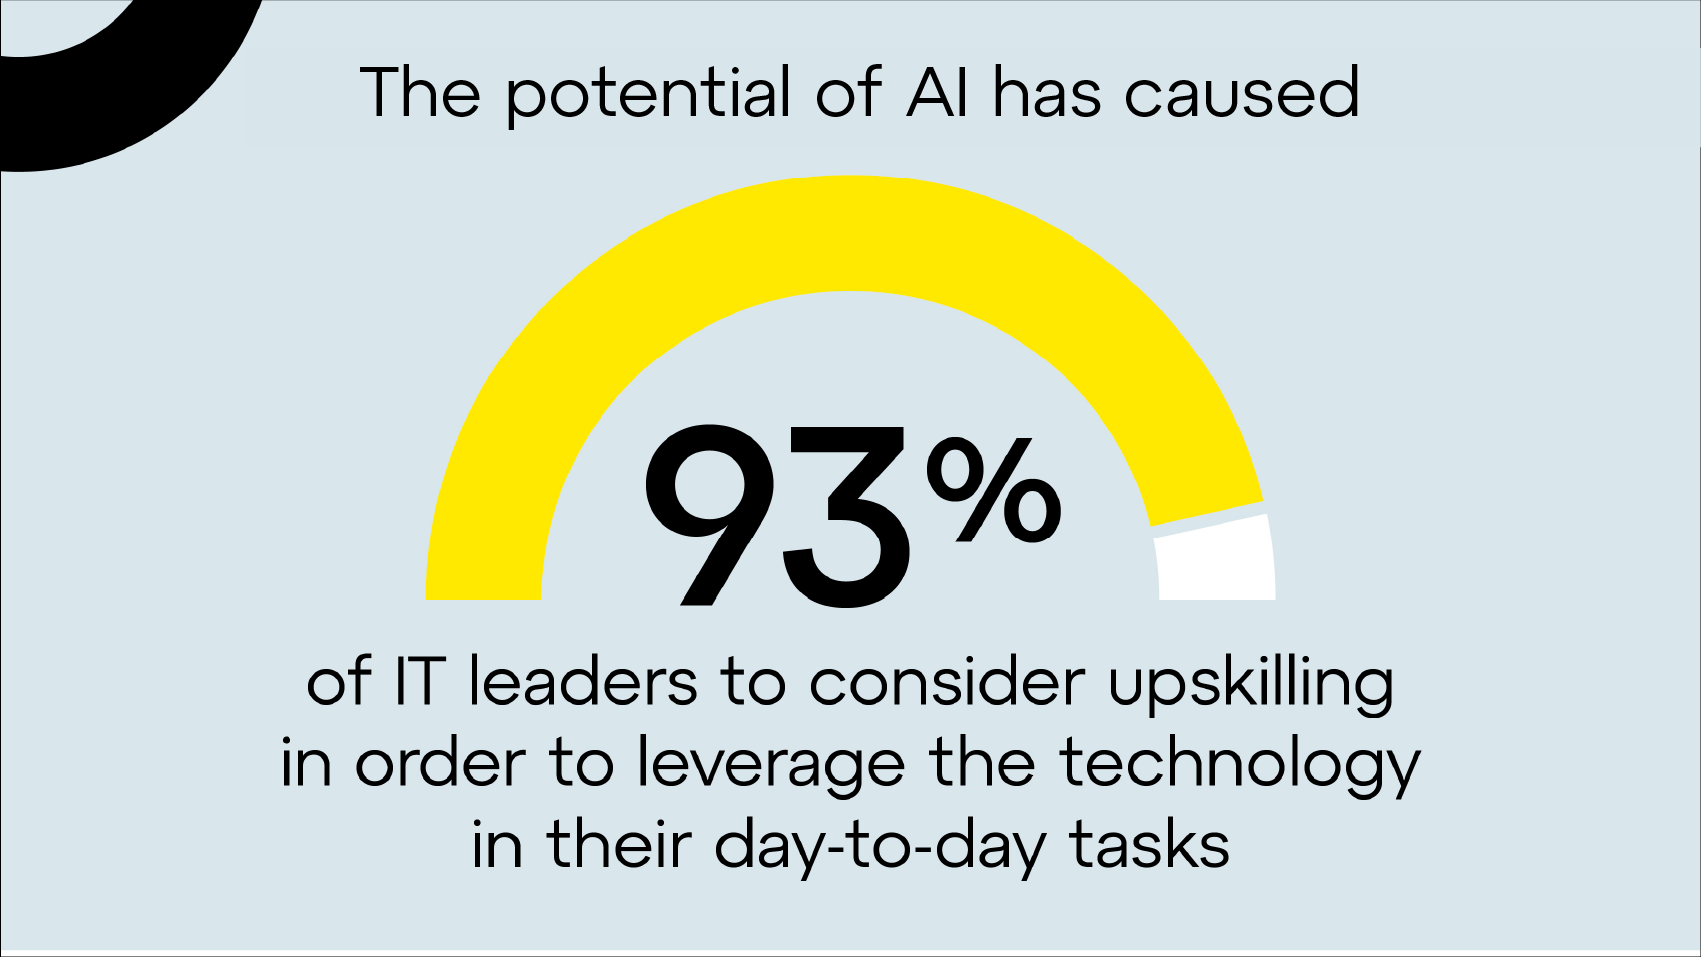 Vanwege AI wil 93% van de IT-leiders hun vaardigheden uitbouwen om AI dagelijks te kunnen inzetten.